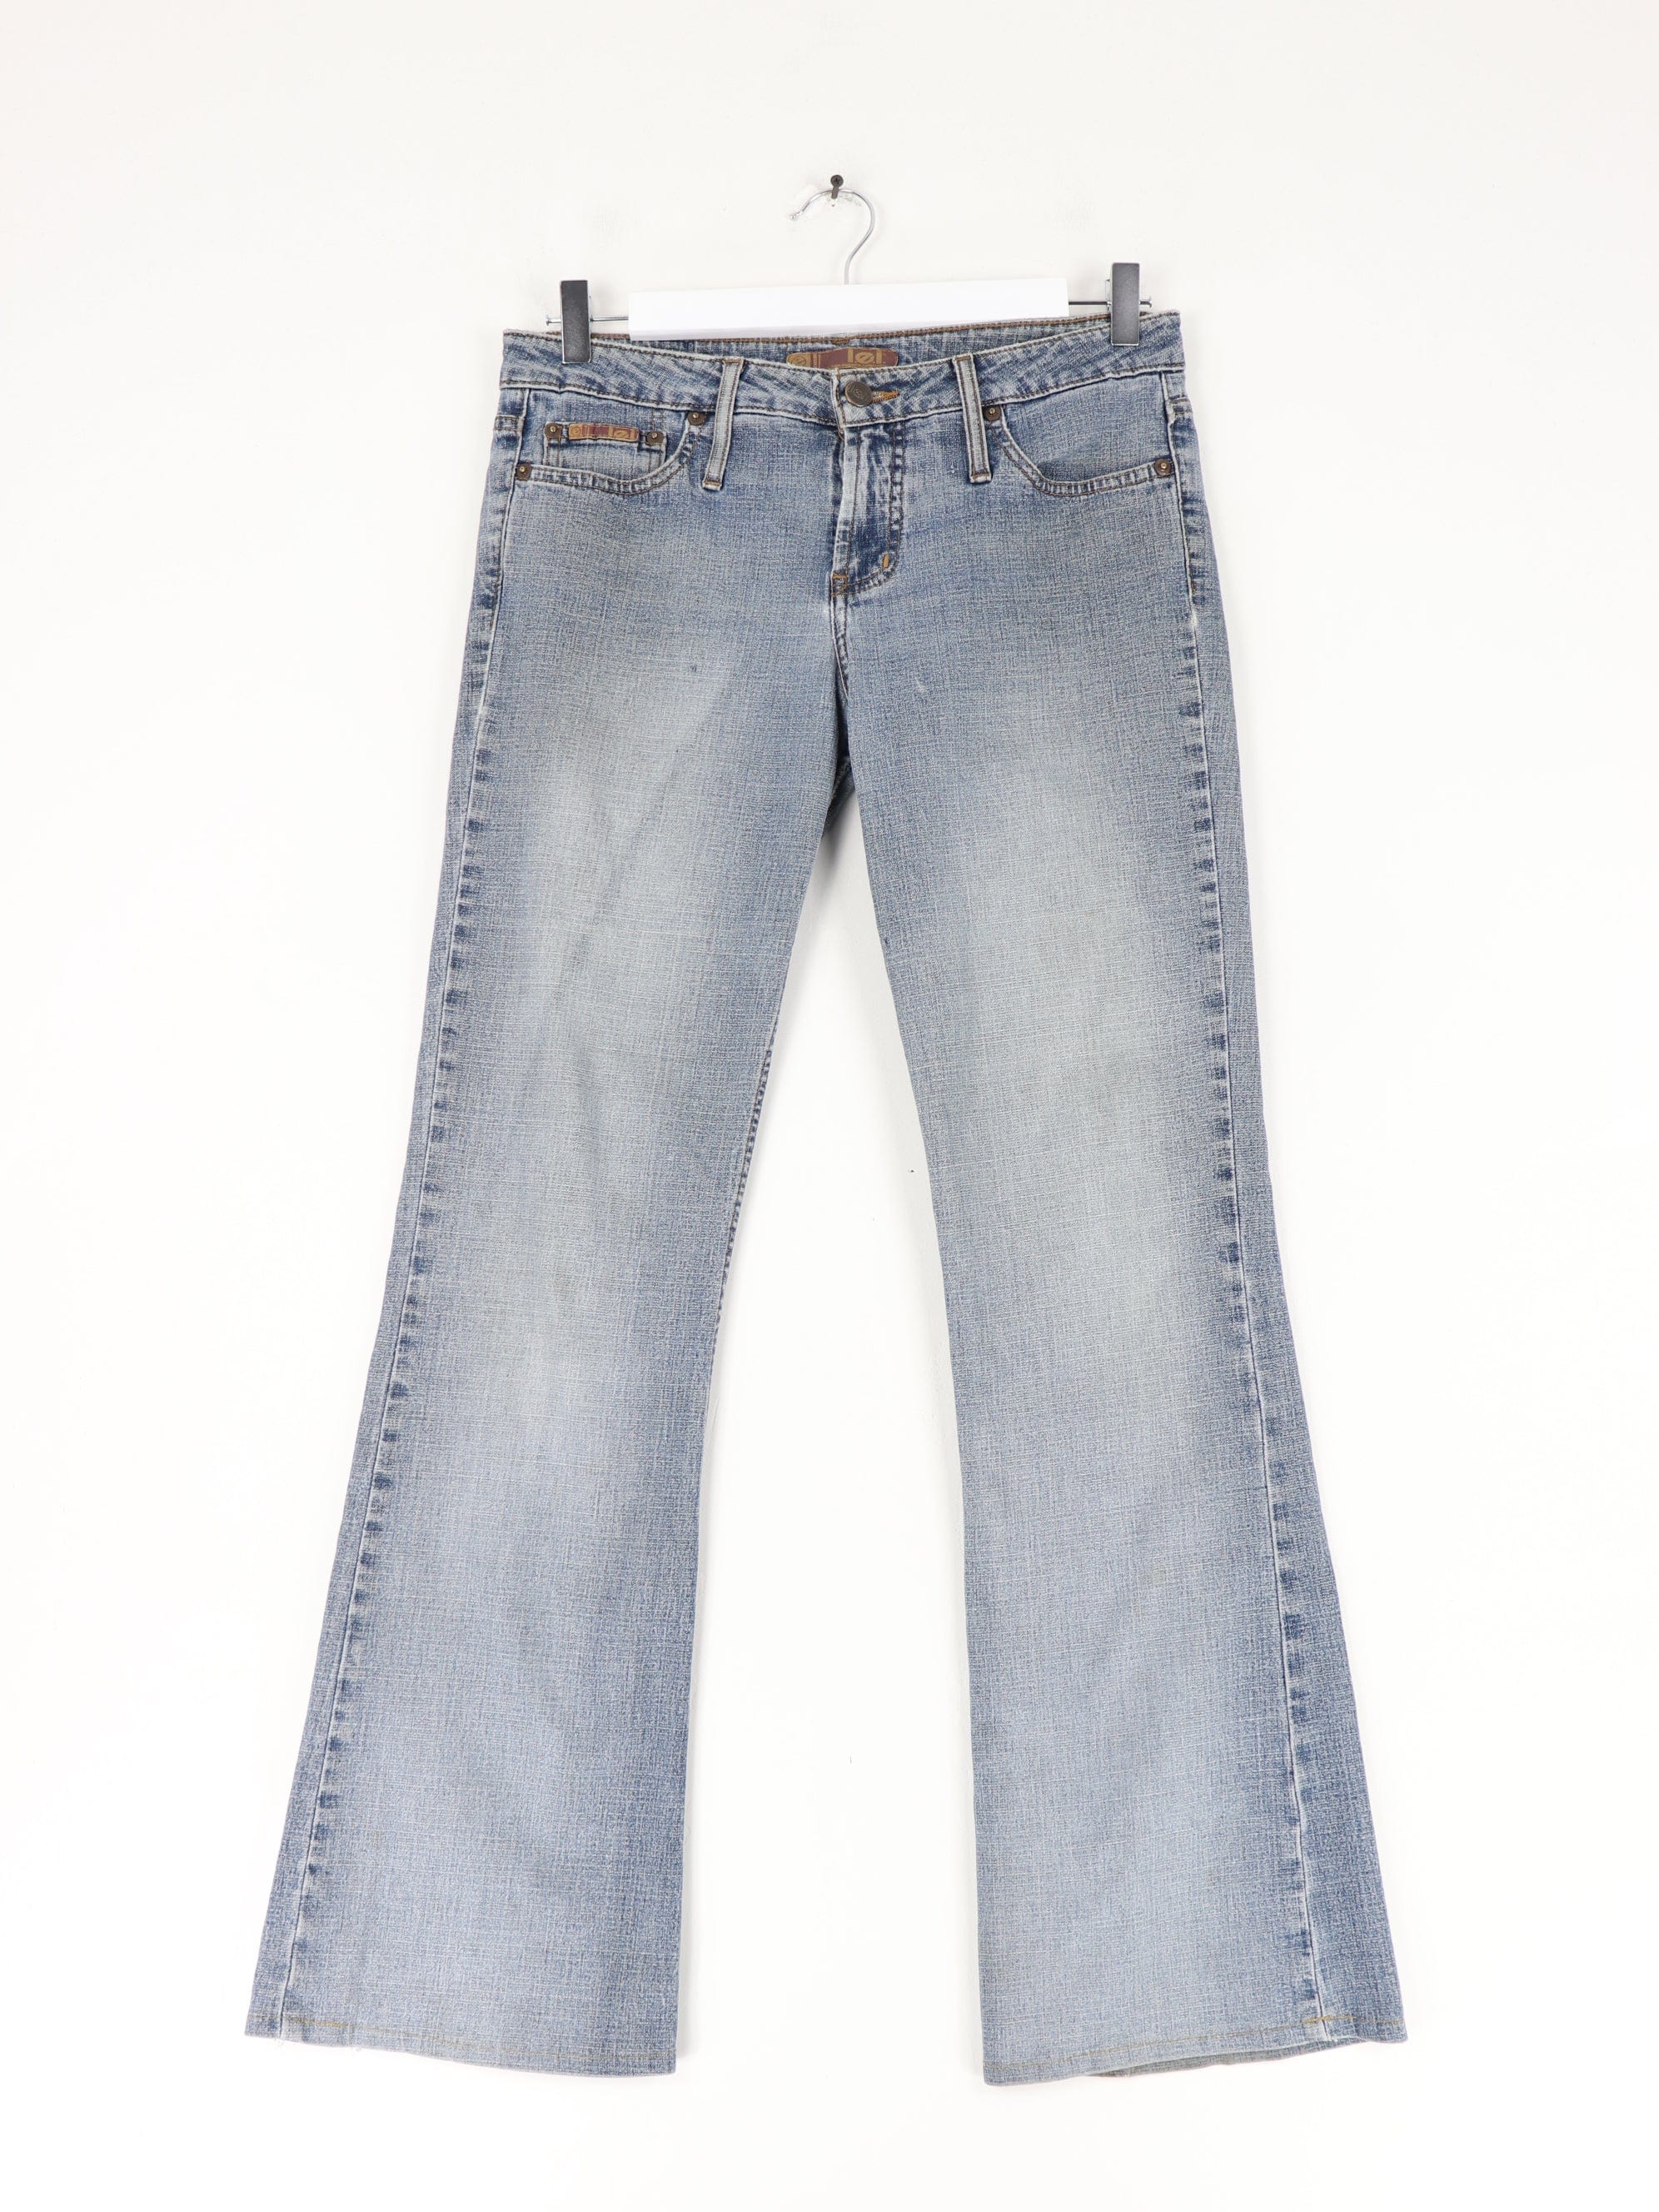 https://propervintagecanada.com/cdn/shop/files/other-jeans-vintage-l-e-i-pants-womens-9-blue-low-rise-y2k-bootcut-flare-denim-jeans-31208356642875.jpg?v=1685838916